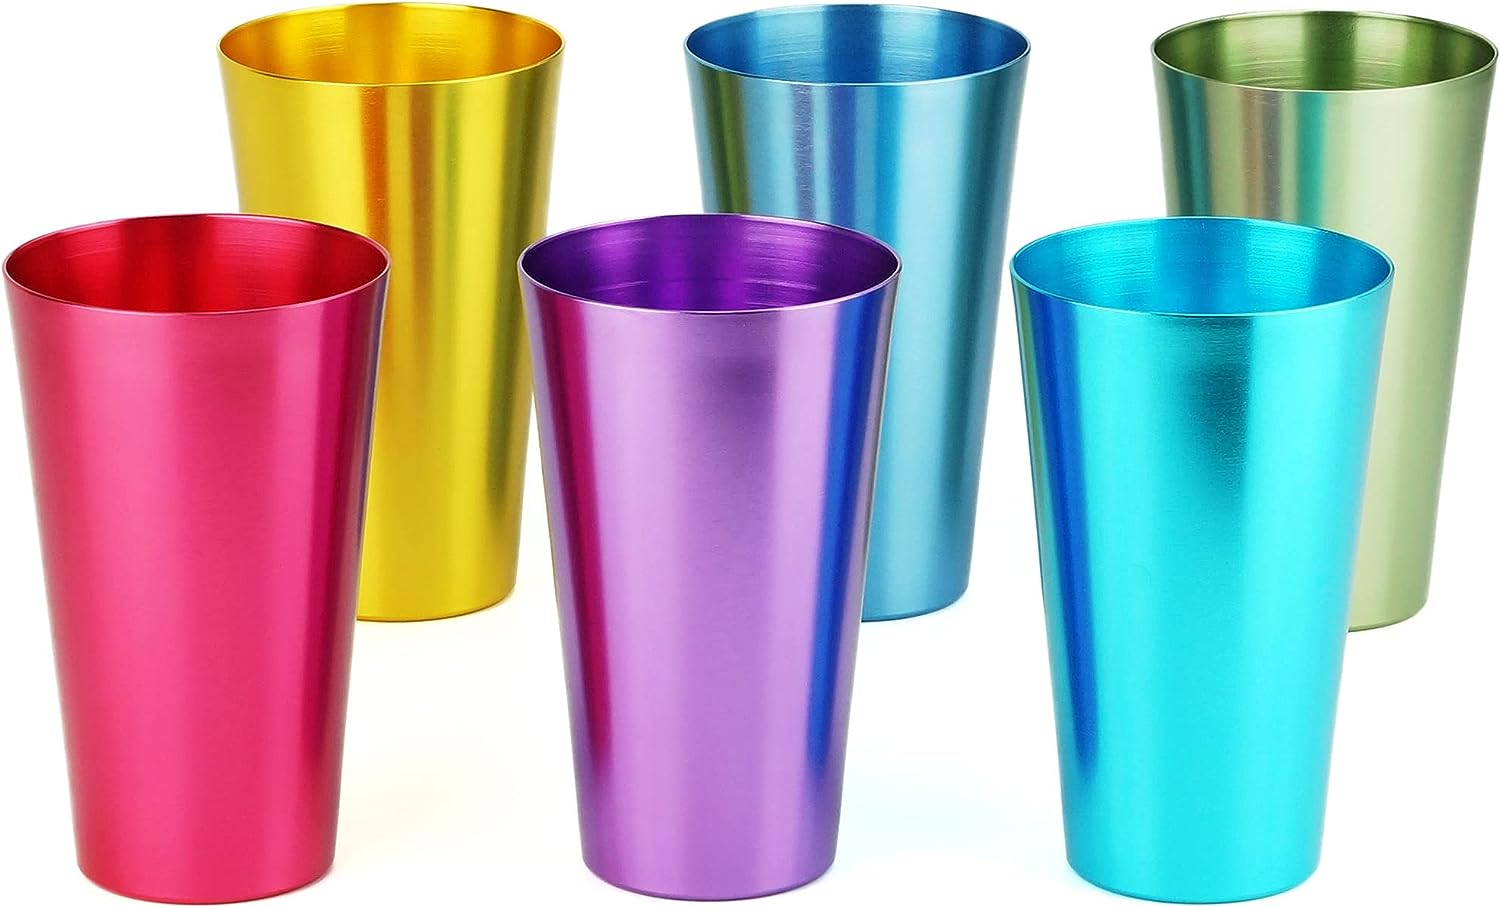 Aluminum Tumblers Retro Jewel Aluminum Colored Tumblers Cups Set of 6